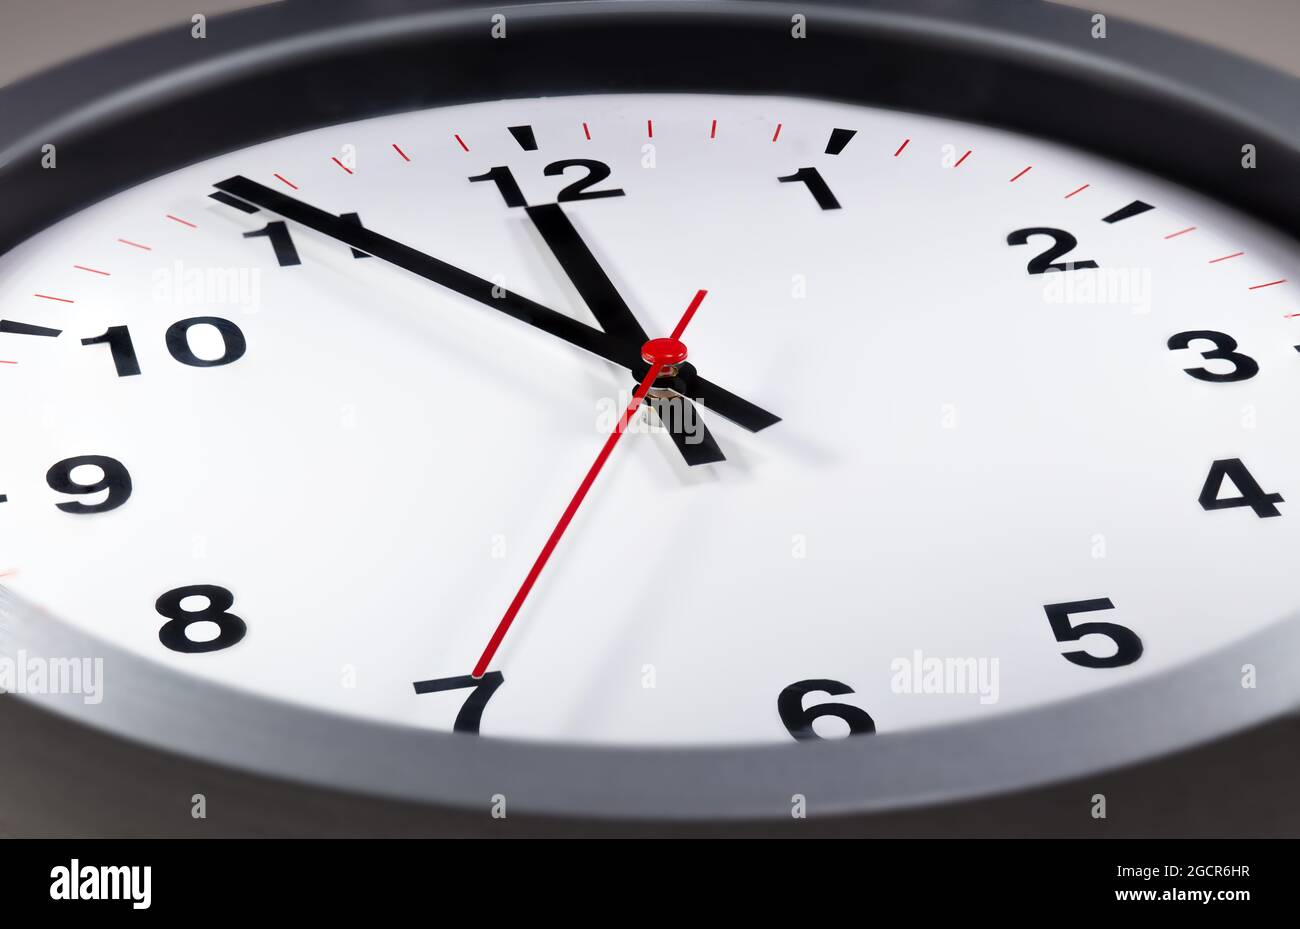 Es ist fünf bis zwölf, die Uhr tickt. Moderne Wanduhr zeigt die Zeit 5 vor 12 an. Nahaufnahme einer Wanduhr, mit fünf Minuten bis zwölf Uhr Stockfoto